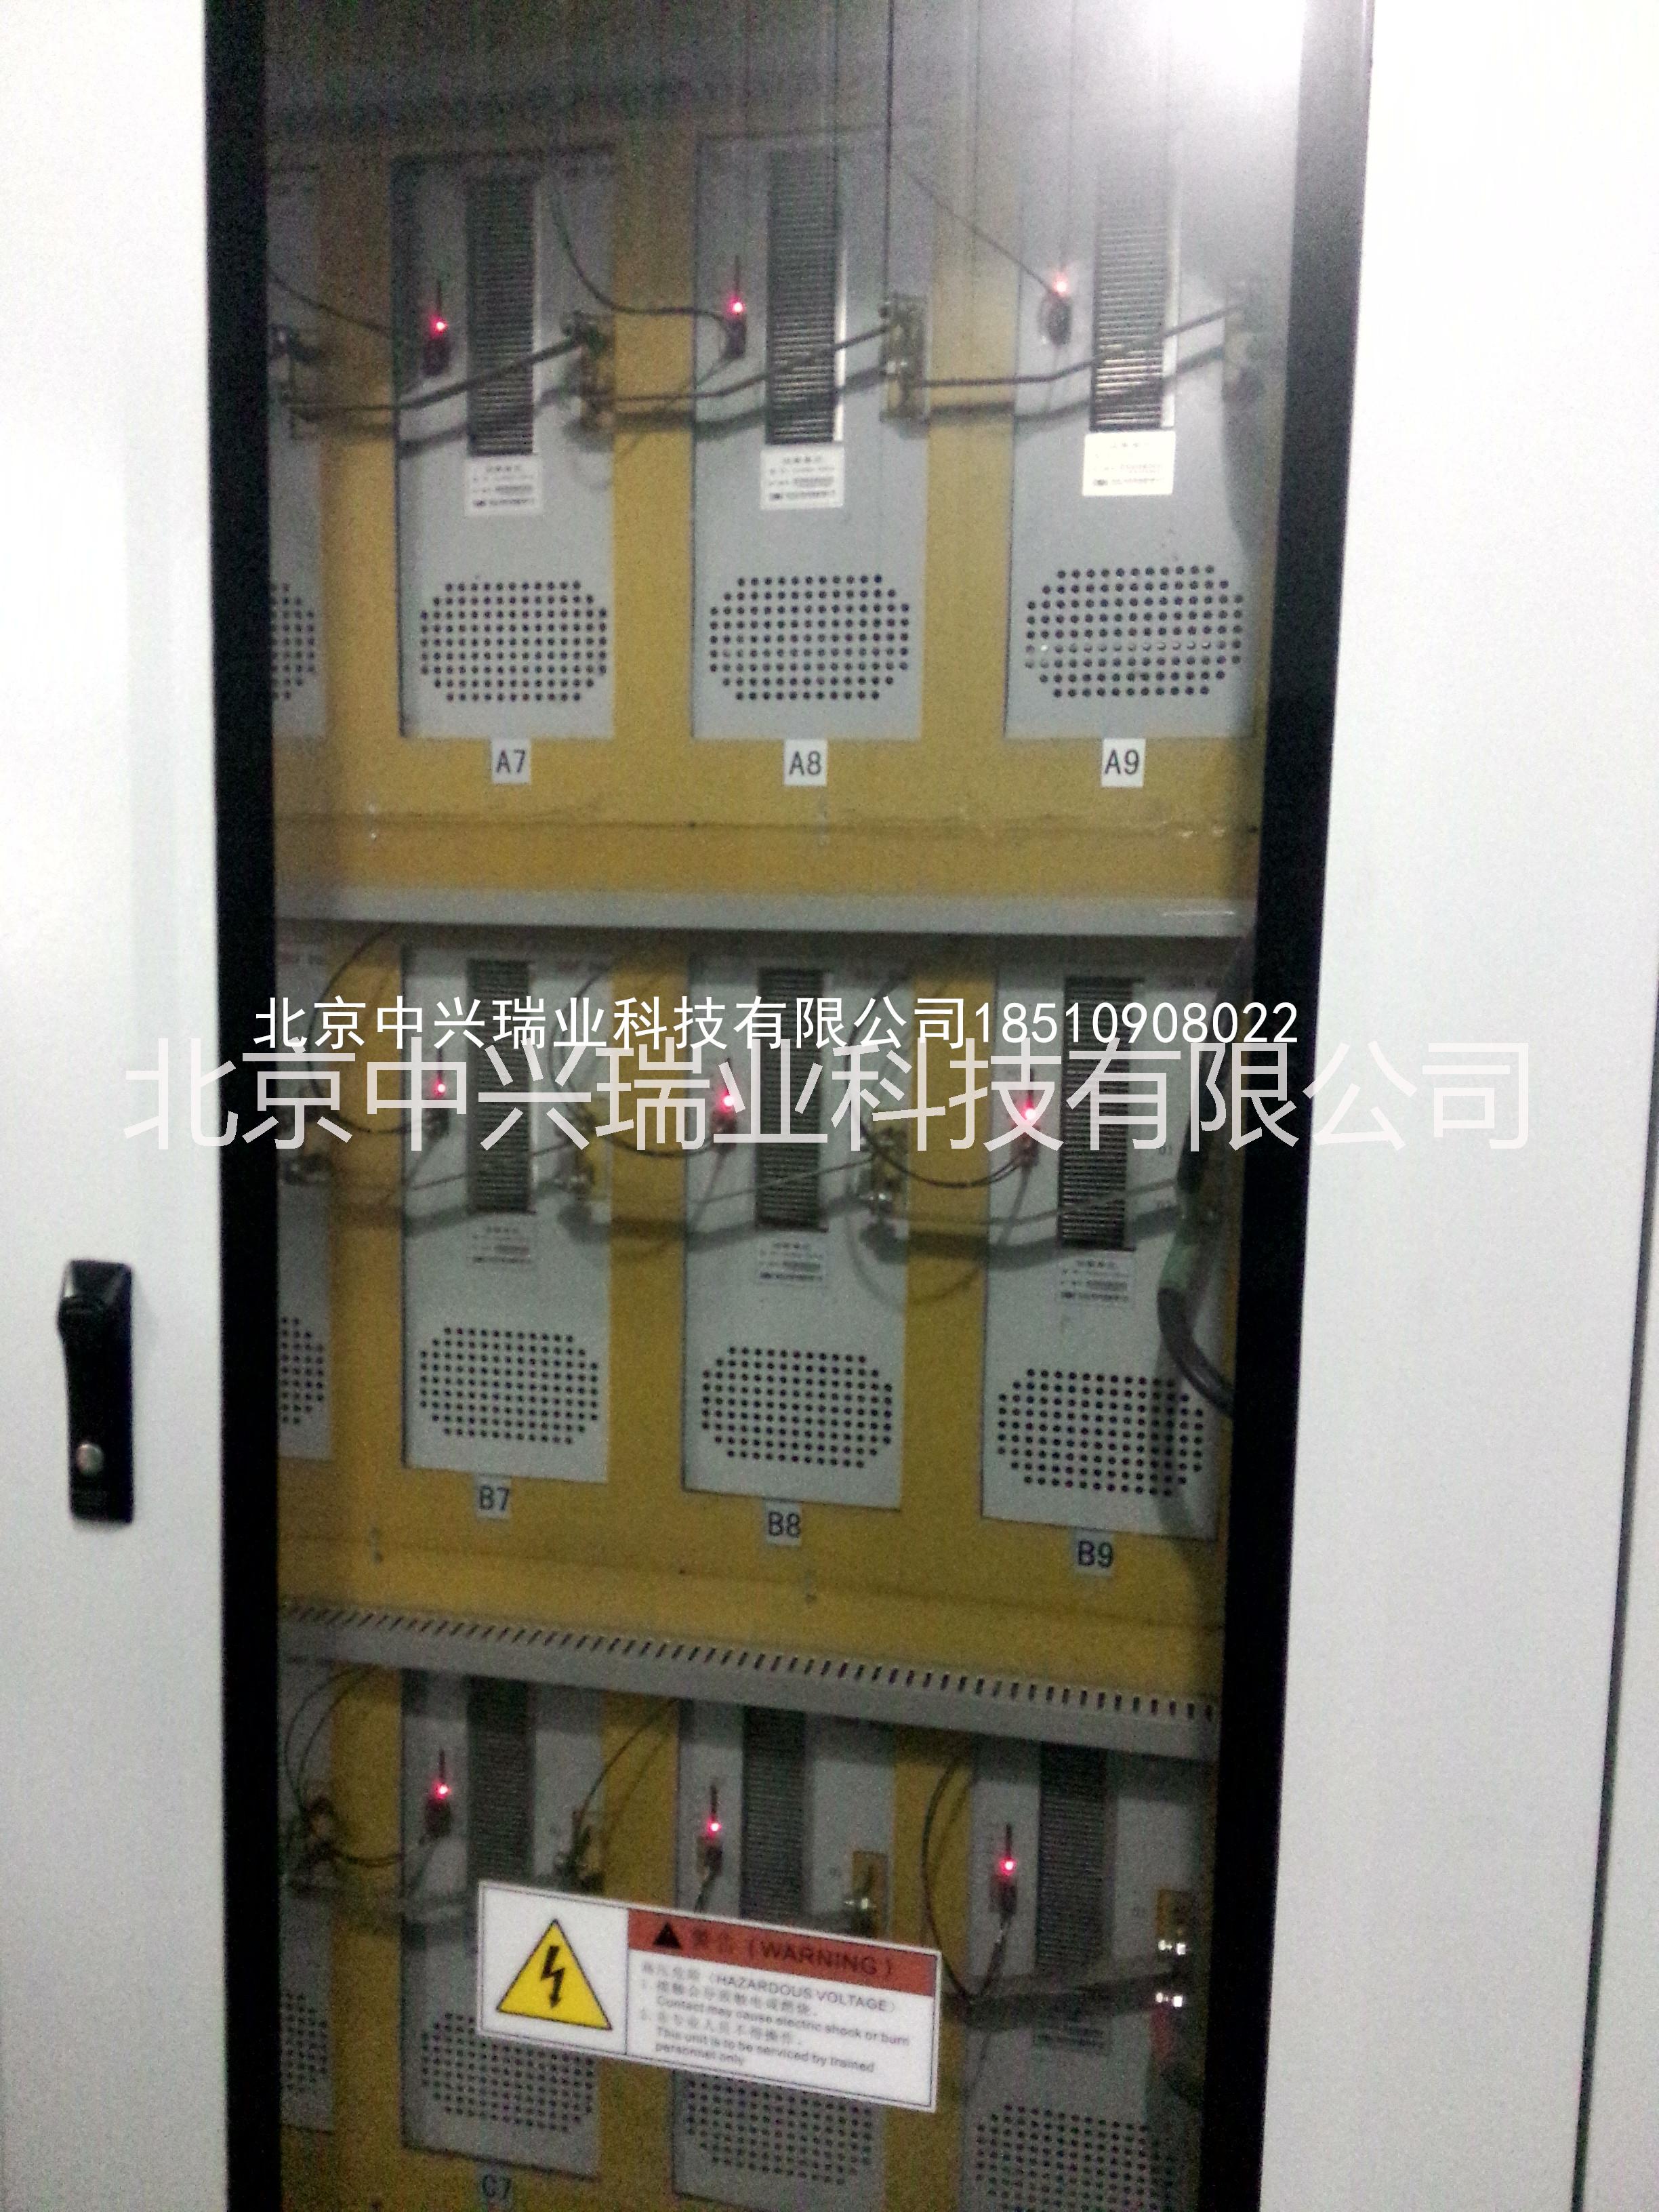 供应用于科陆变频器|CL2700|CV9000的深圳科陆高压变频器功率单元维修|CLG080-72P01-72P07